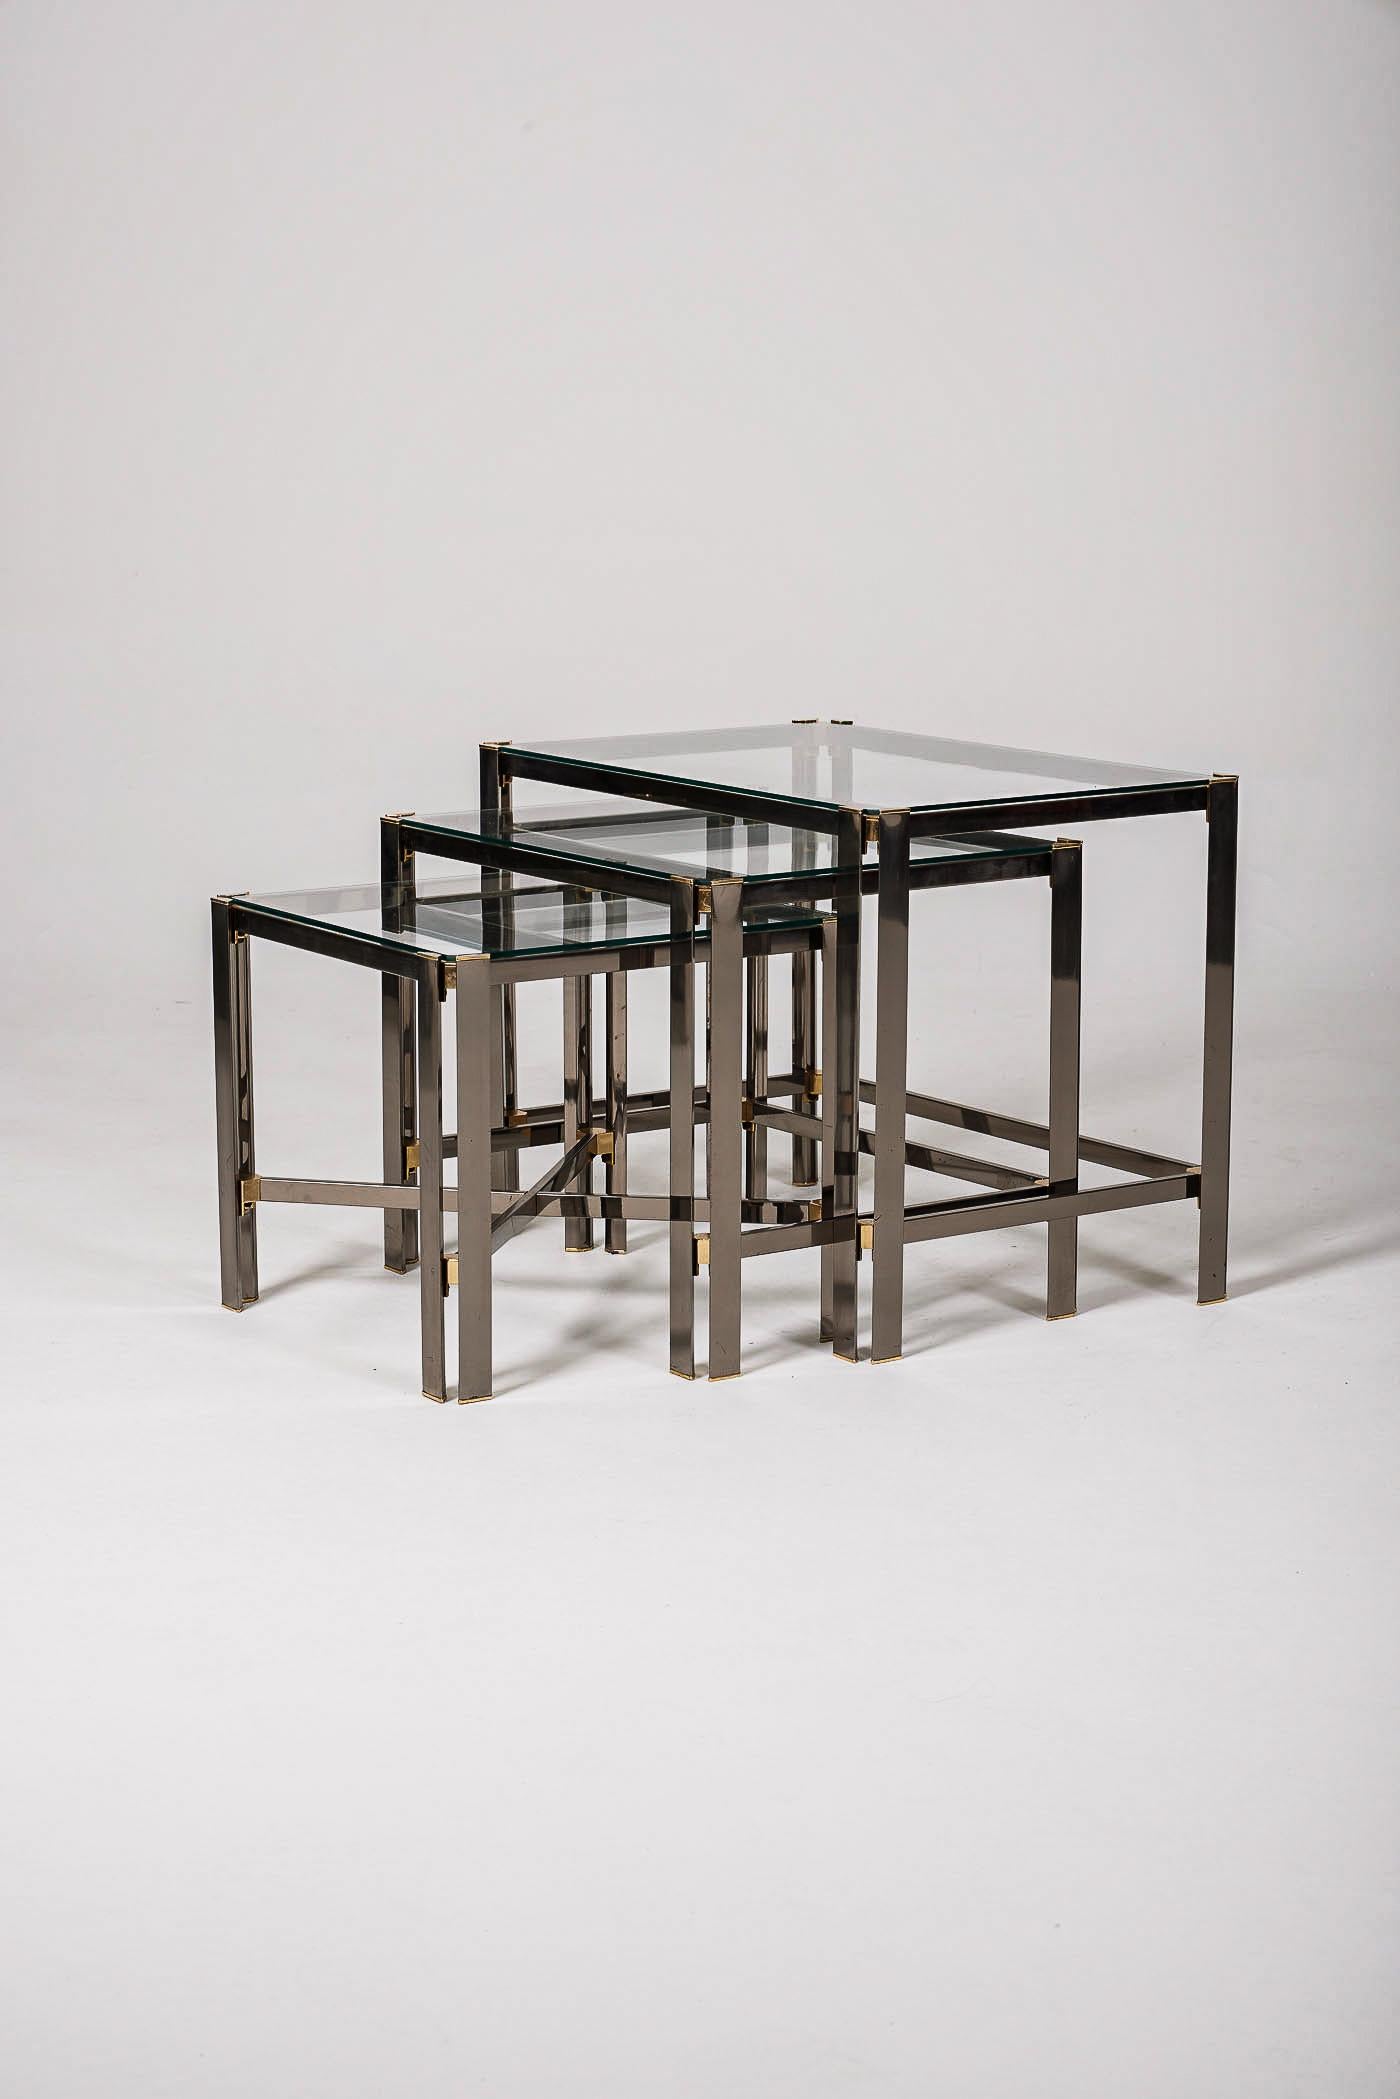 Satz von 3 Nisttischen aus den 1970er Jahren. Die Struktur ist aus vergoldetem Messing. Die Tischplatten sind aus Glas gefertigt. In perfektem Zustand.
DV391